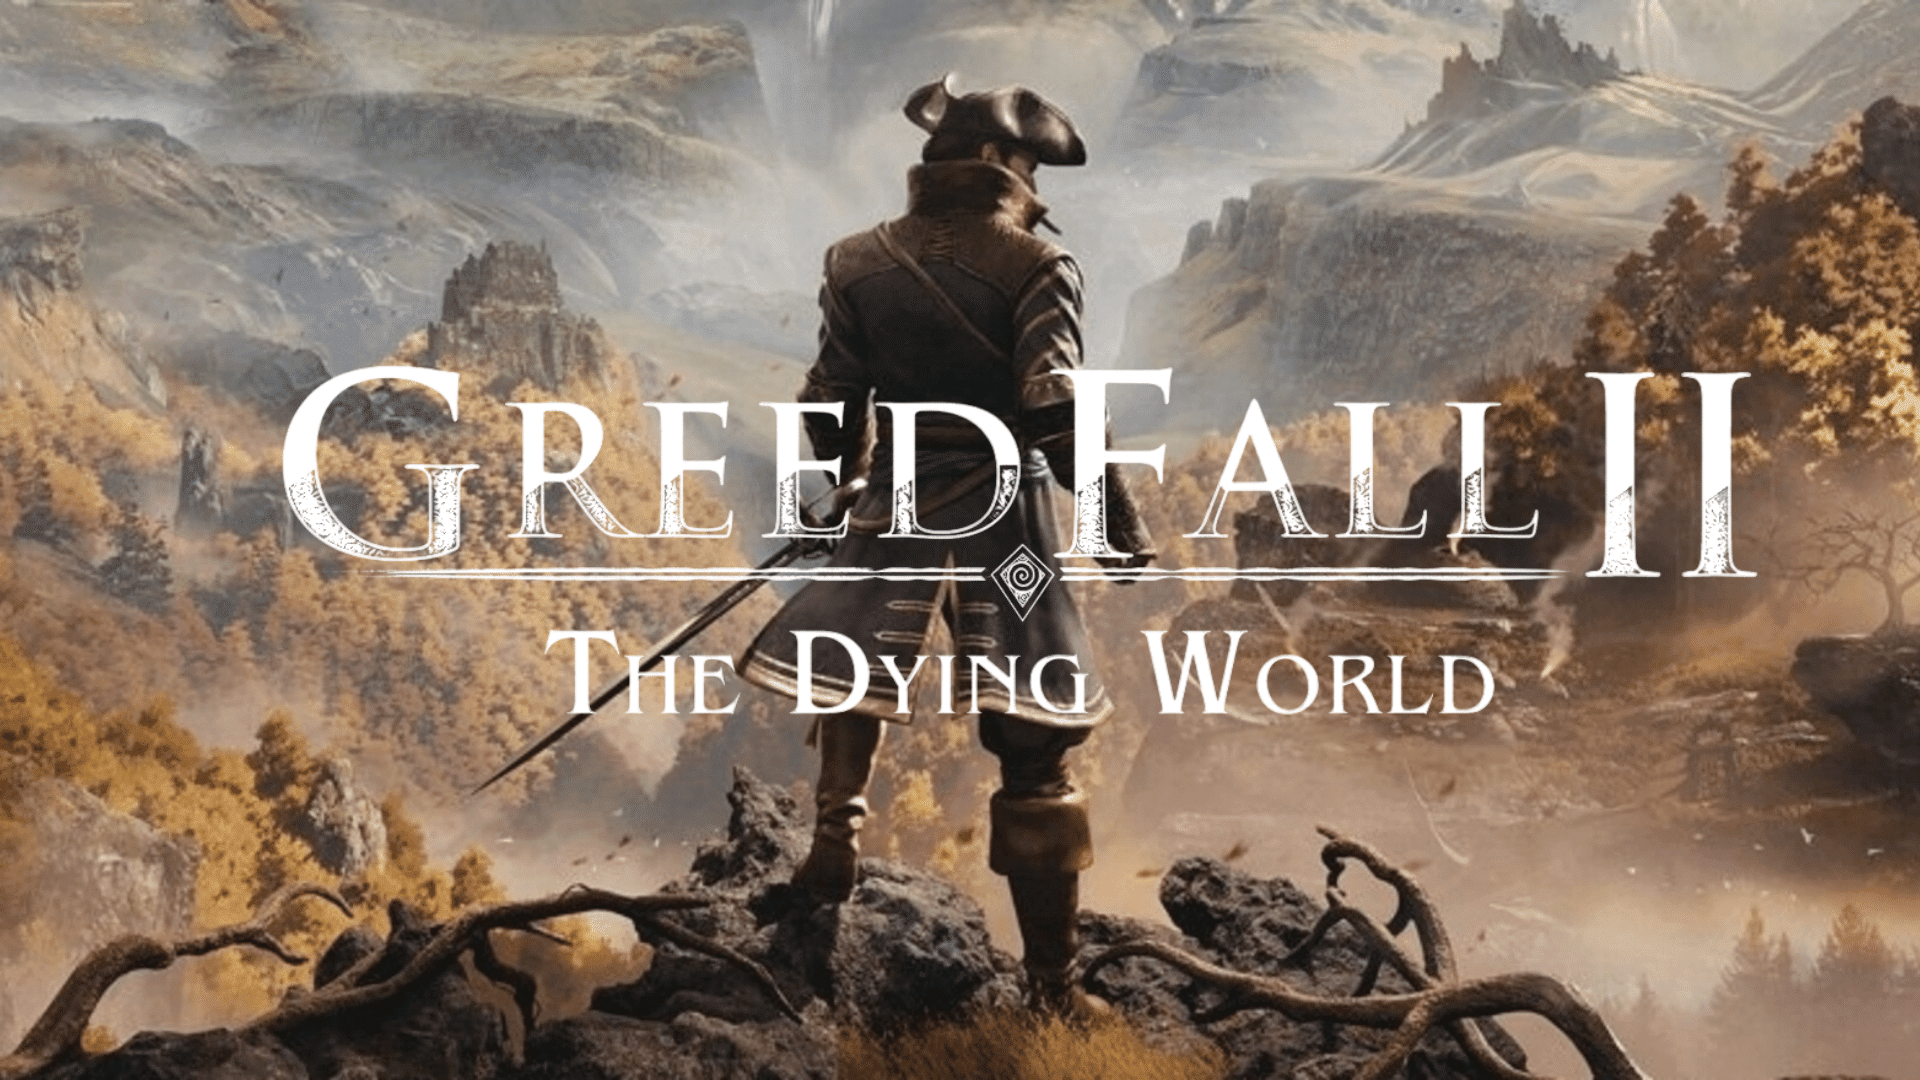 Udviklerne af GreedFall 2: The Dying World har afsløret nye detaljer om spillet: "flere romantiske muligheder" og potentielle cameos fra den forrige del af spillet.